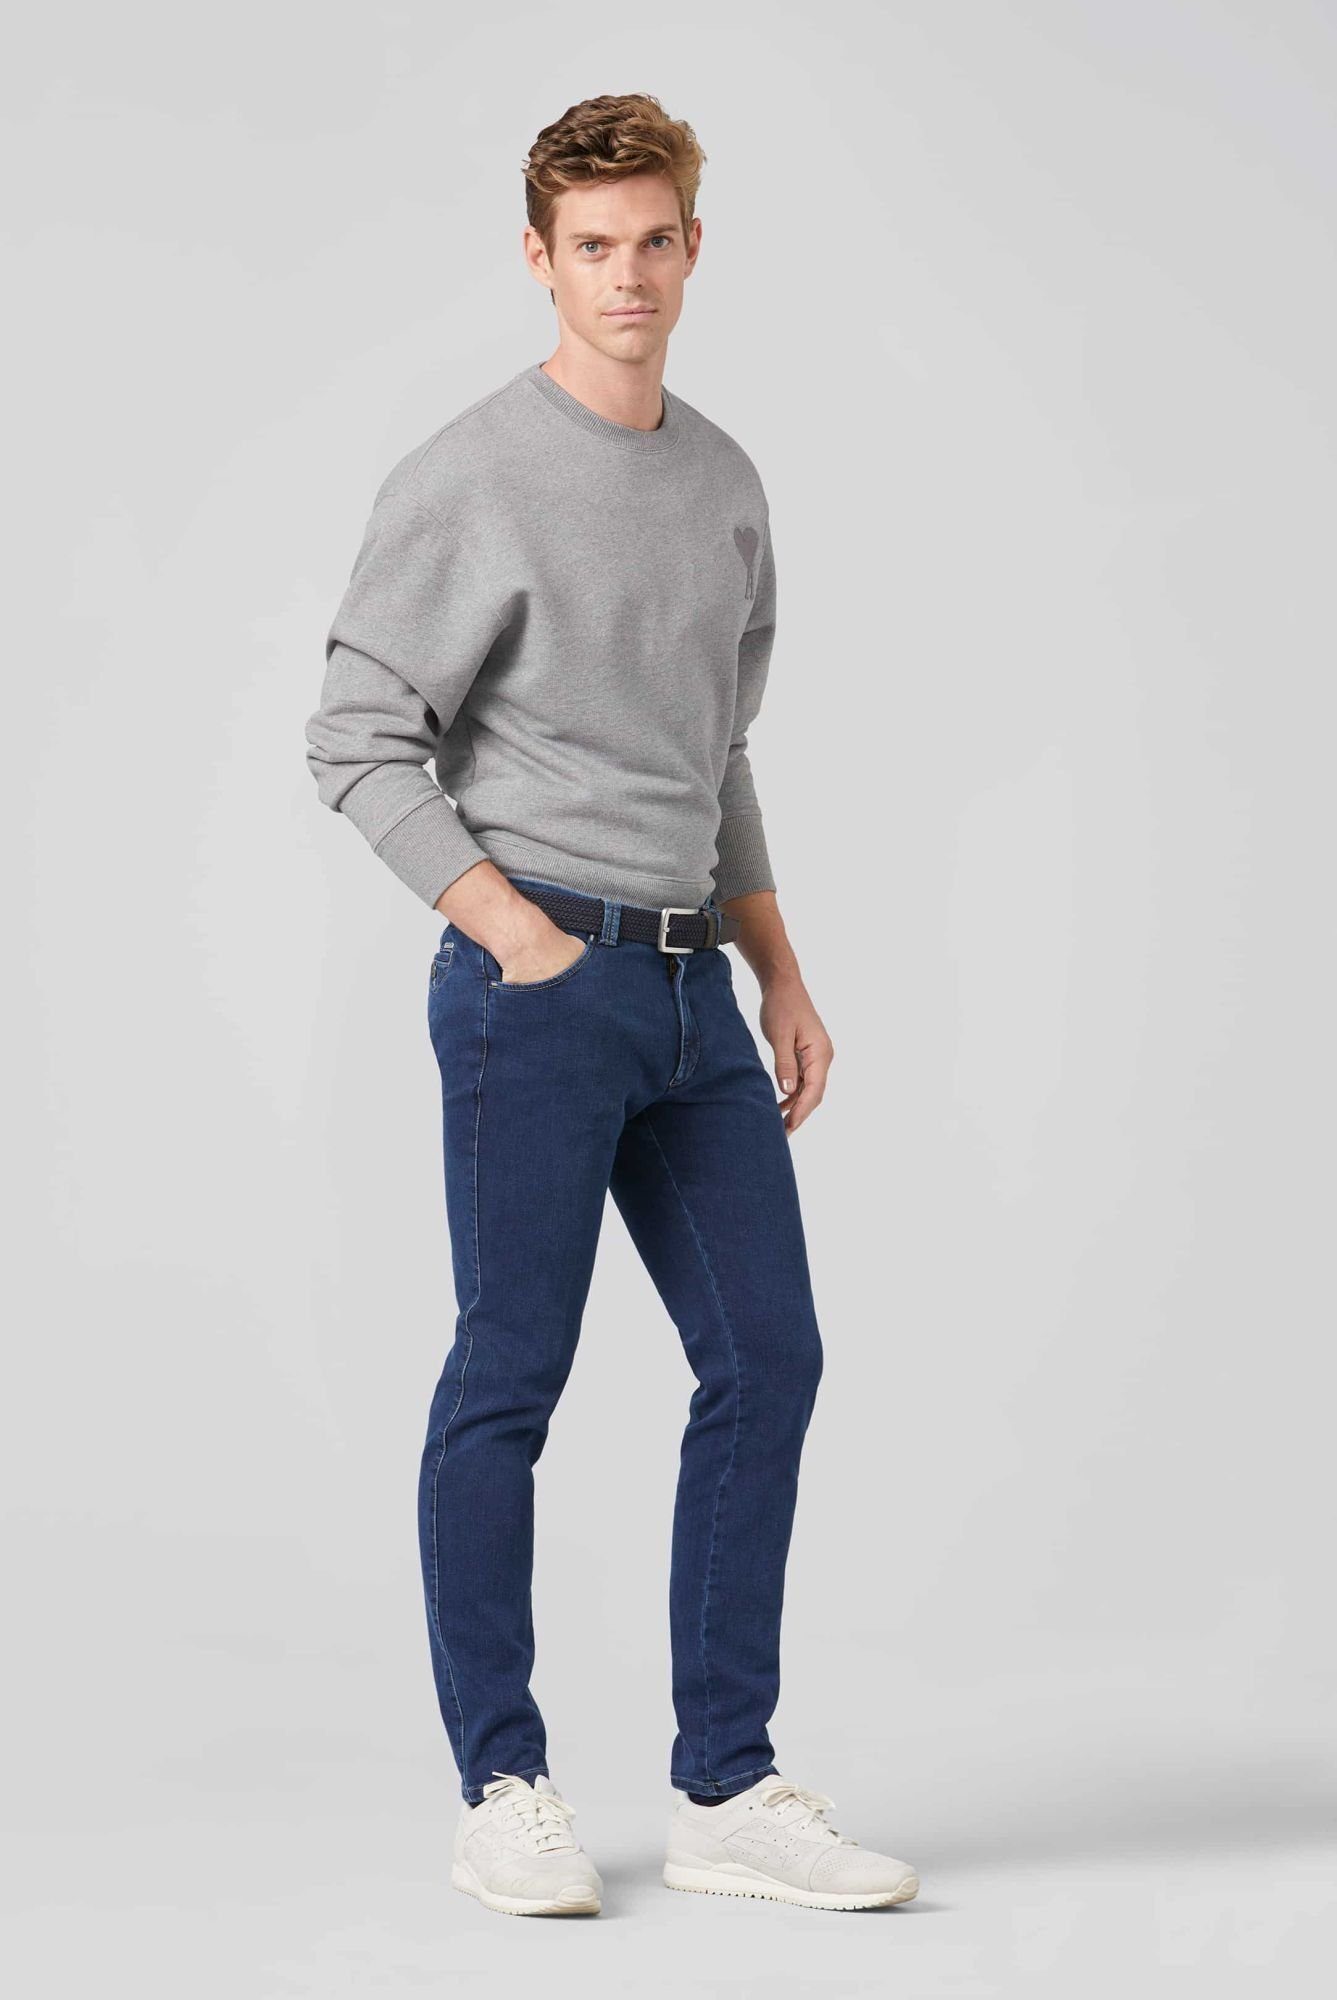 MEYER mit Stretch-Dehnbund blau Chino Slim-fit-Jeans Dublin